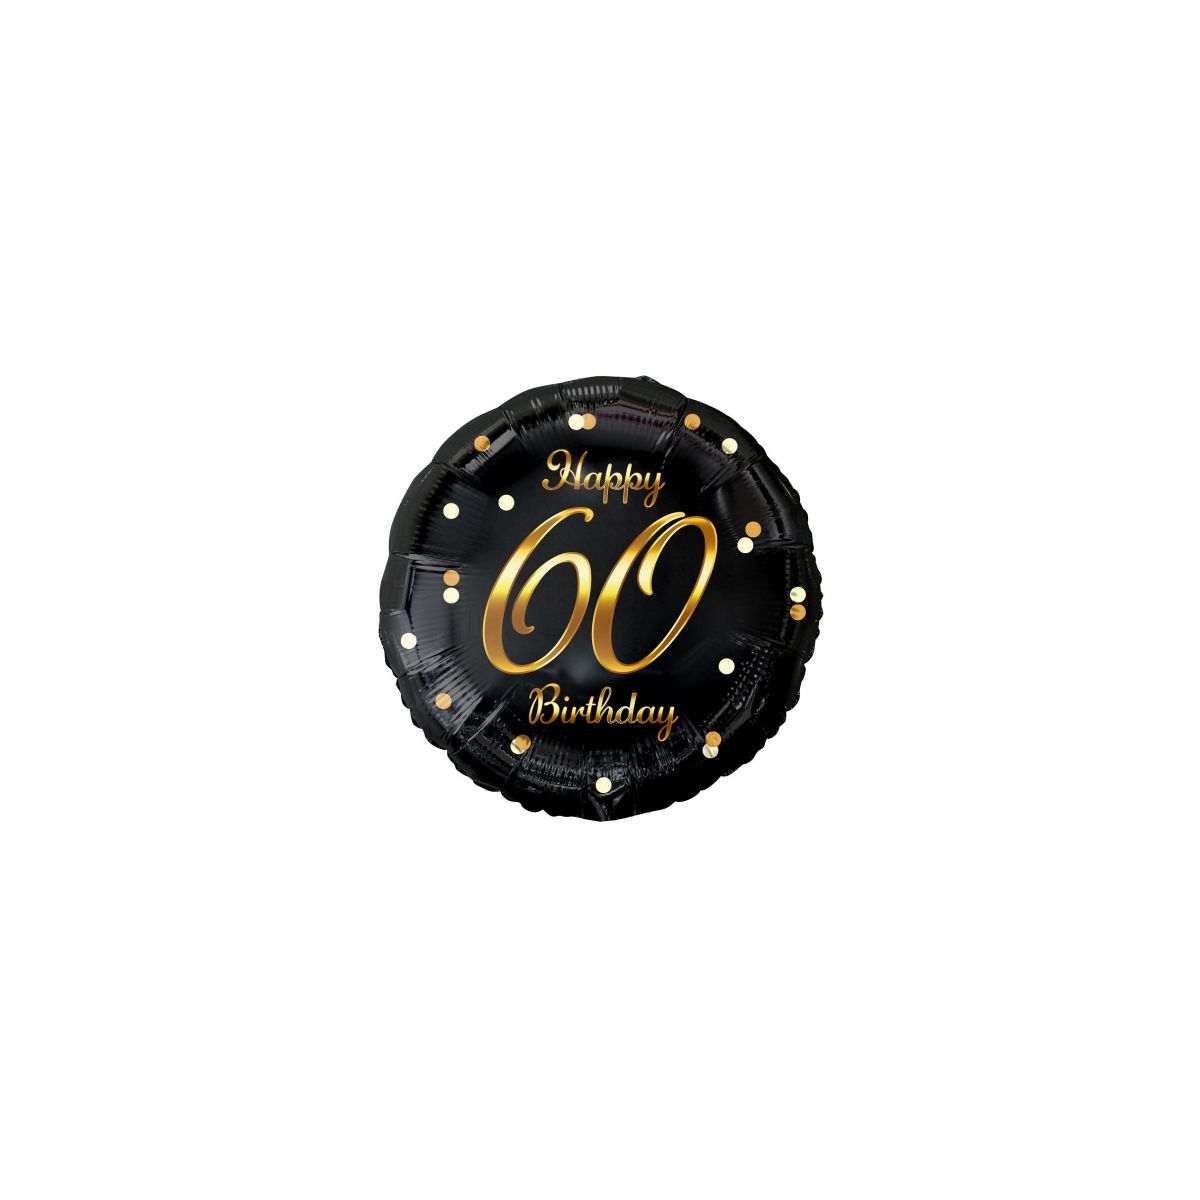 Balon foliowy Godan Happy 60 Birthday, czarny, nadruk złoty 18cal (FG-O60Z)